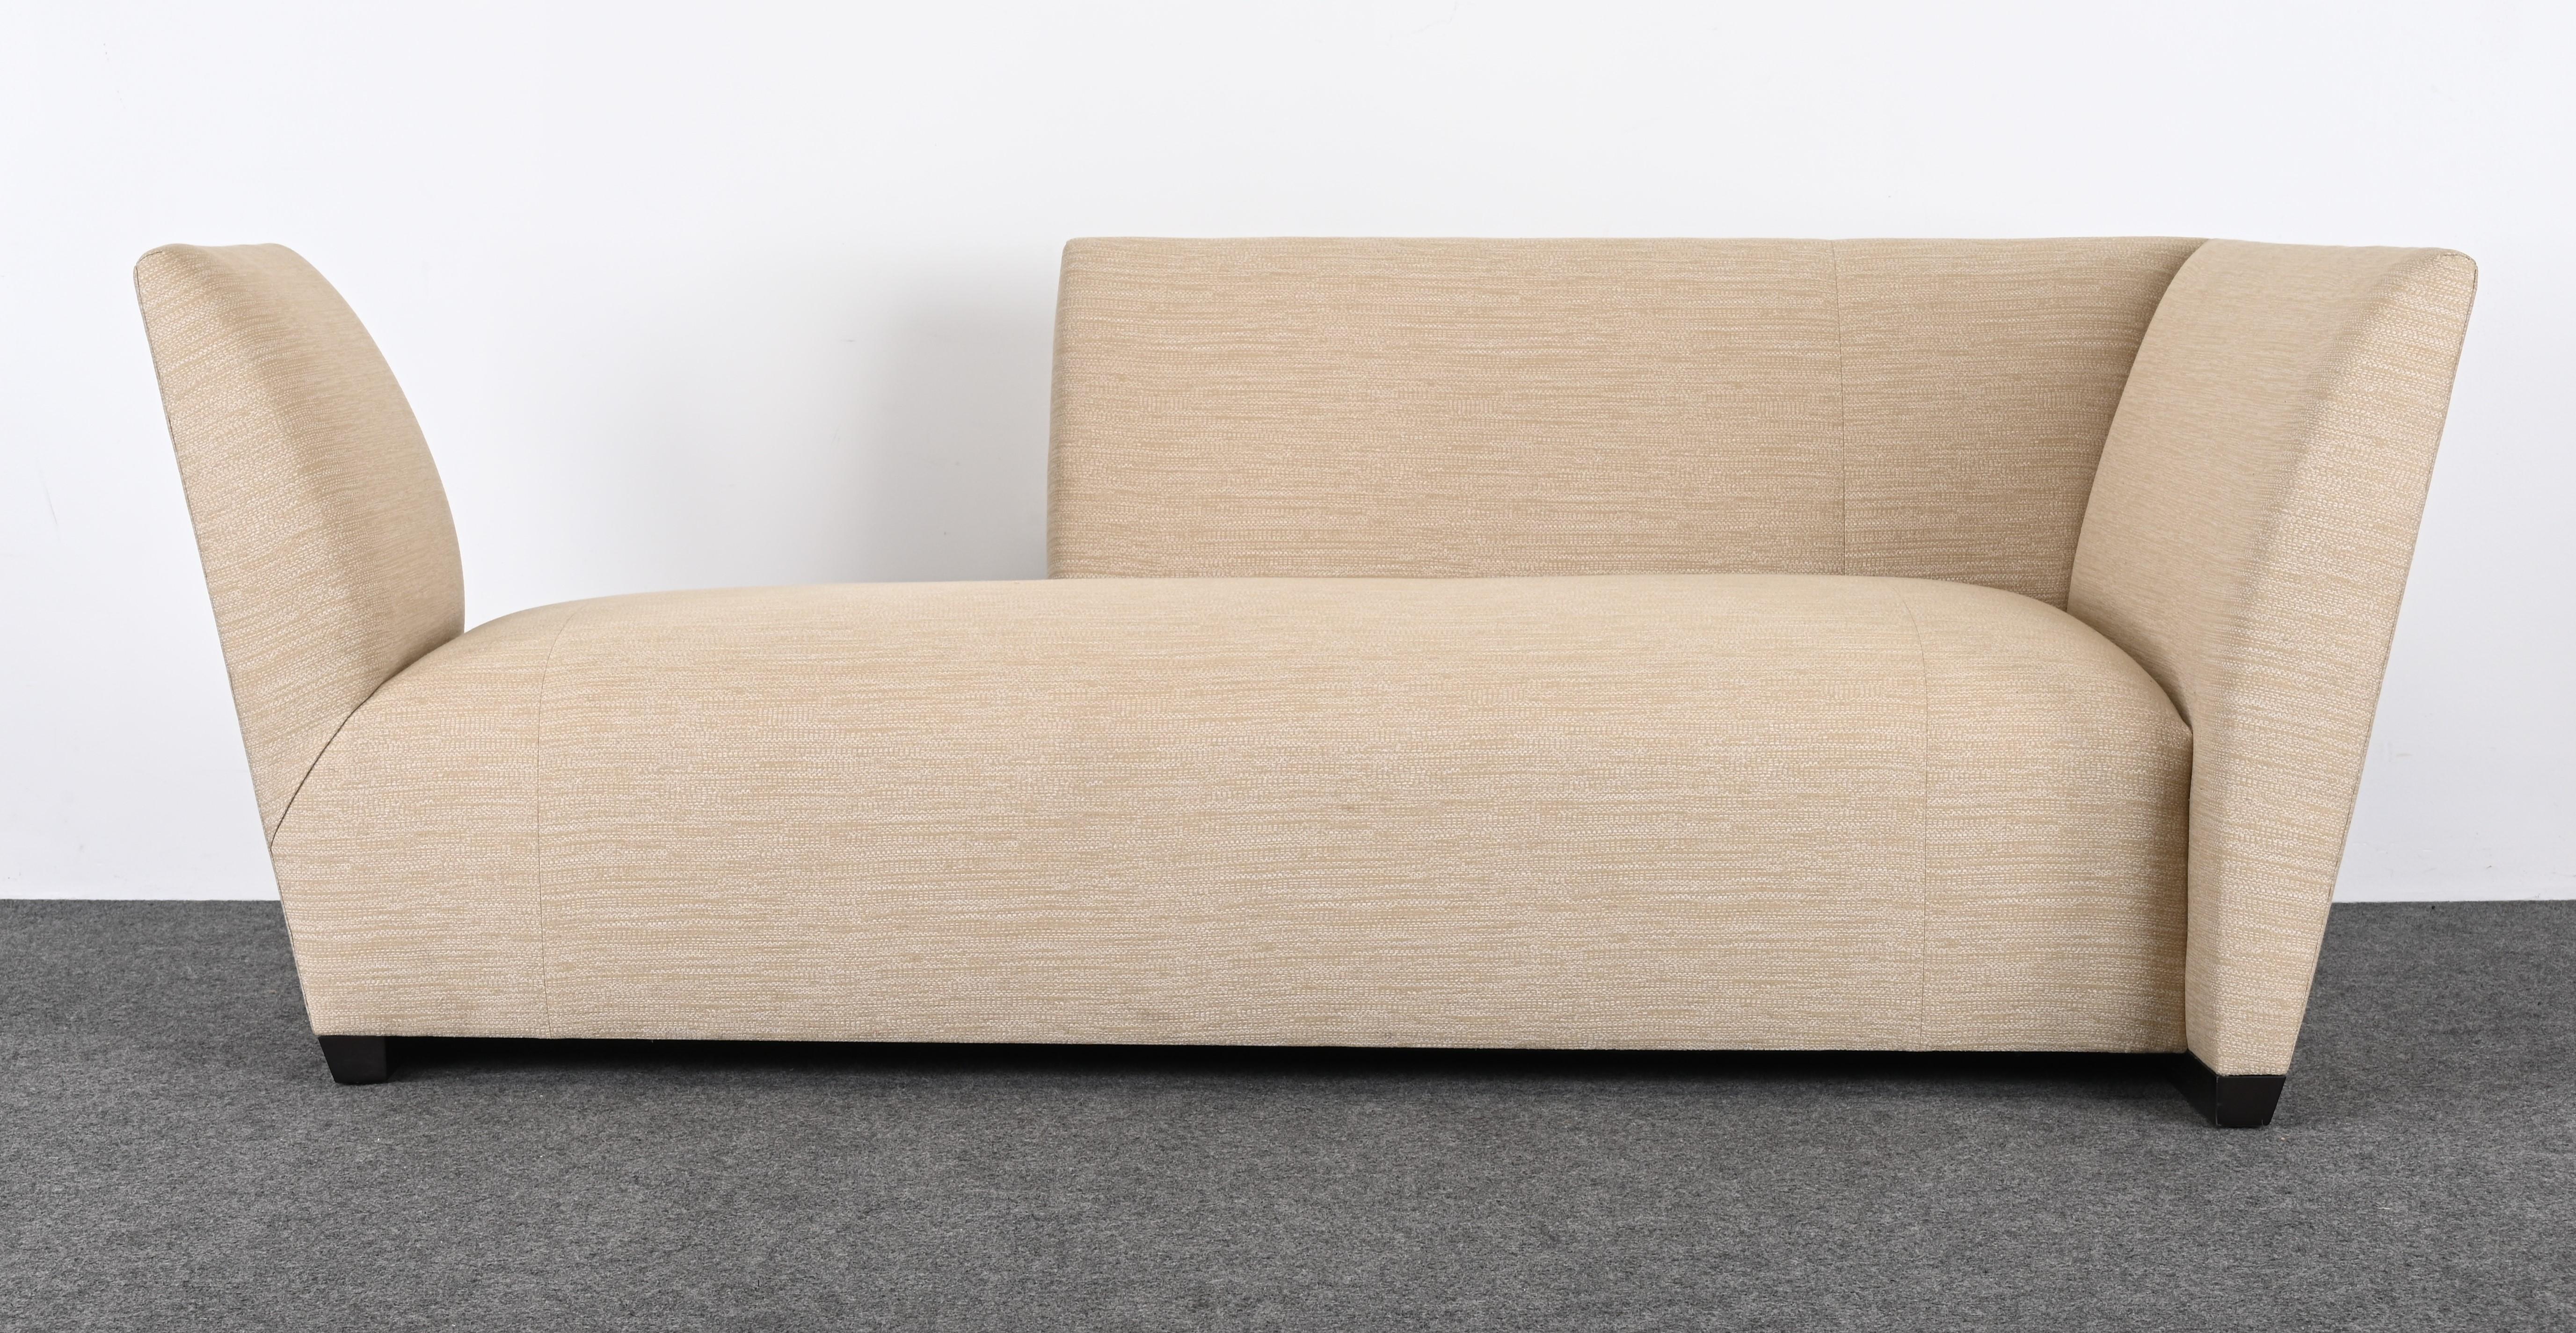 Un superbe canapé Island Sofa conçu par Joe D'Urso pour Donghia, dans les années 1990. Ce superbe canapé ou chaise longue est dans un état relativement neuf. Cette pièce fera sensation dans n'importe quelle pièce ou intérieur. La sellerie est en